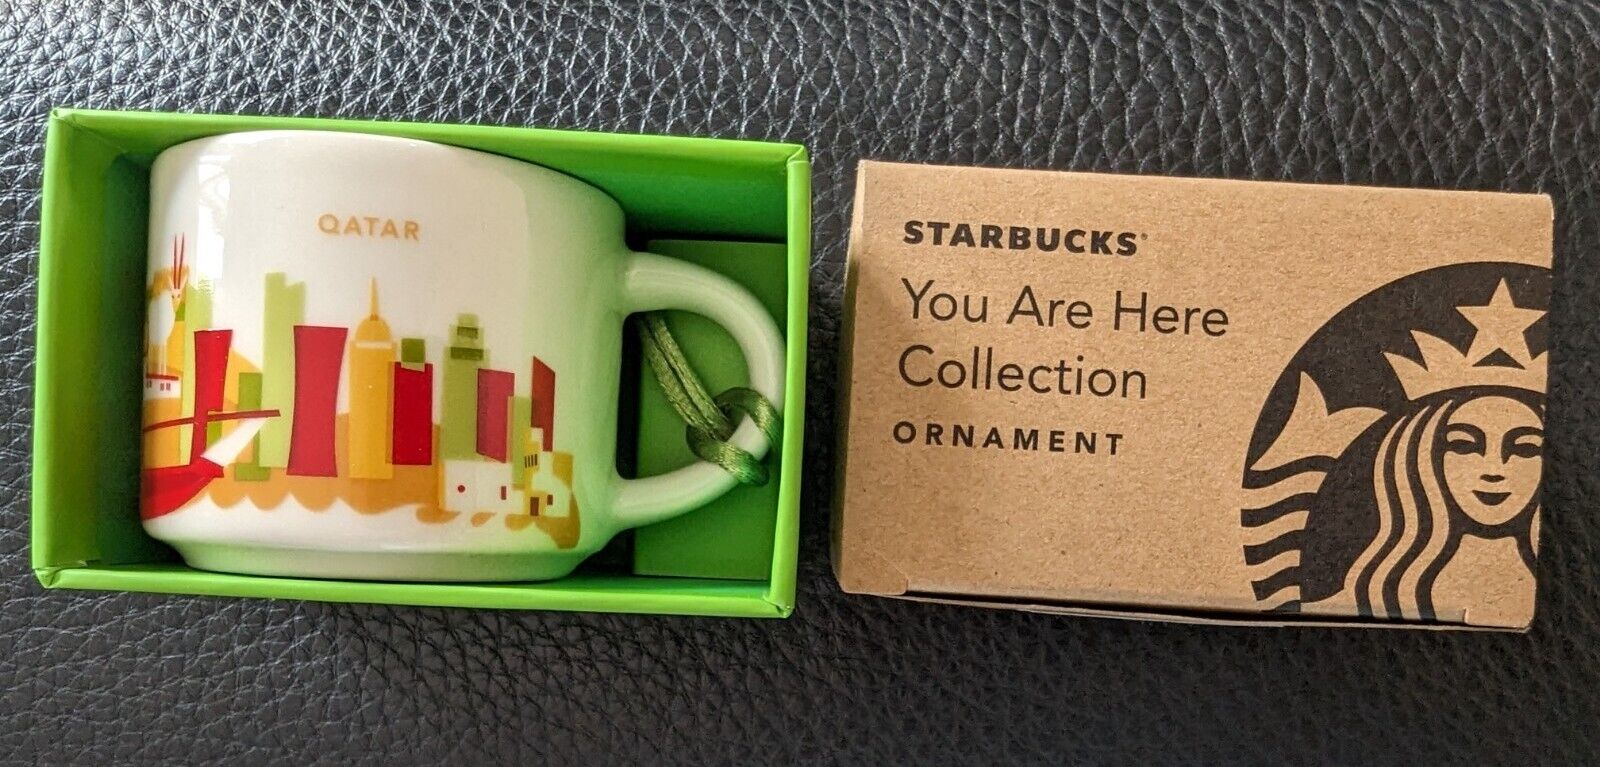 STARBUCKS QATAR YAH (You Are Here) Ornament mug 2 oz, NIB, RARE, fast shipping